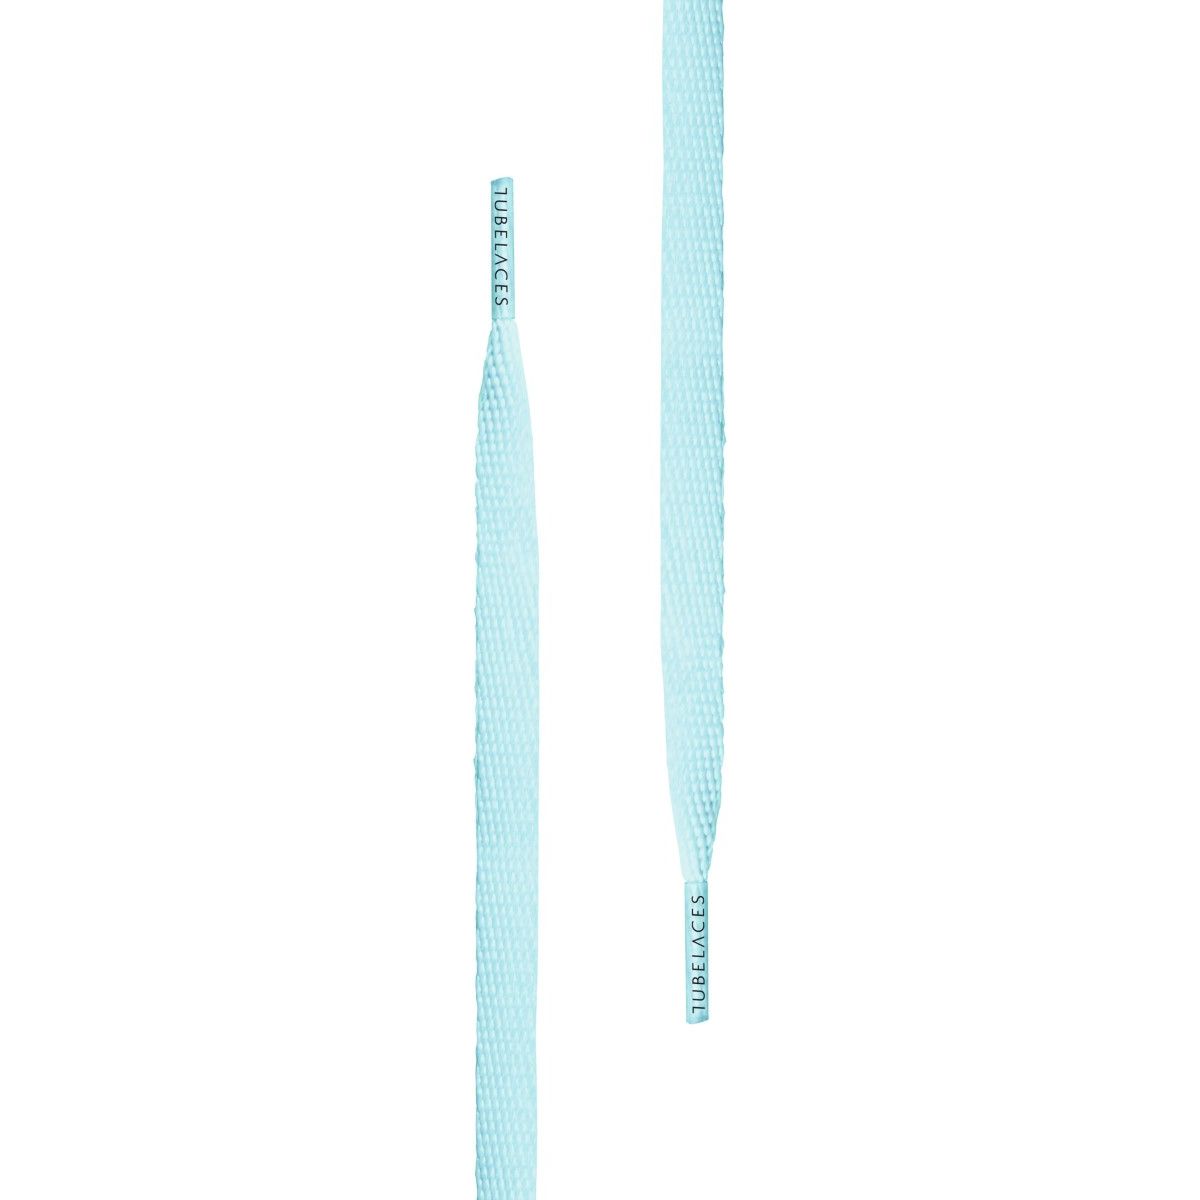 Tubelaces White Flat Unisex Shoelaces Ice Blue 120 cm